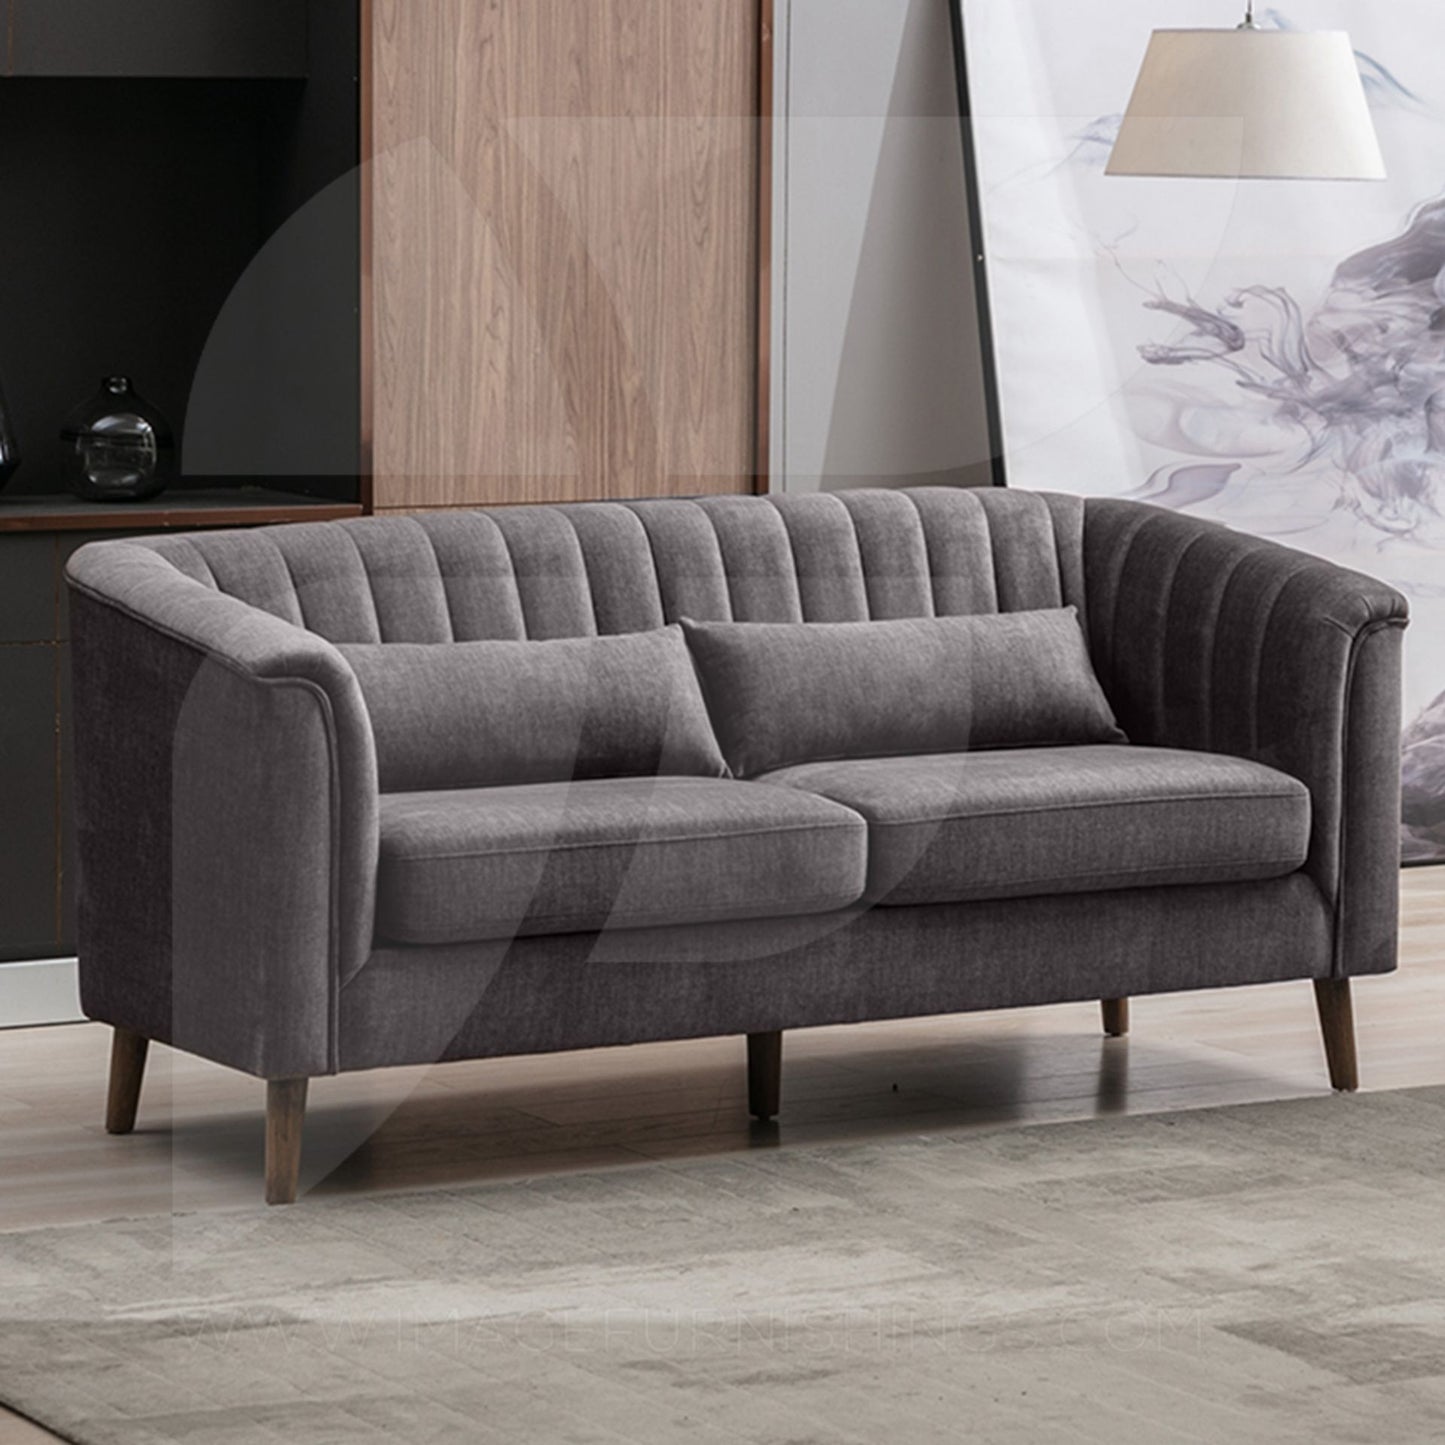 Fendi Sofa Sets - Graphite Grey